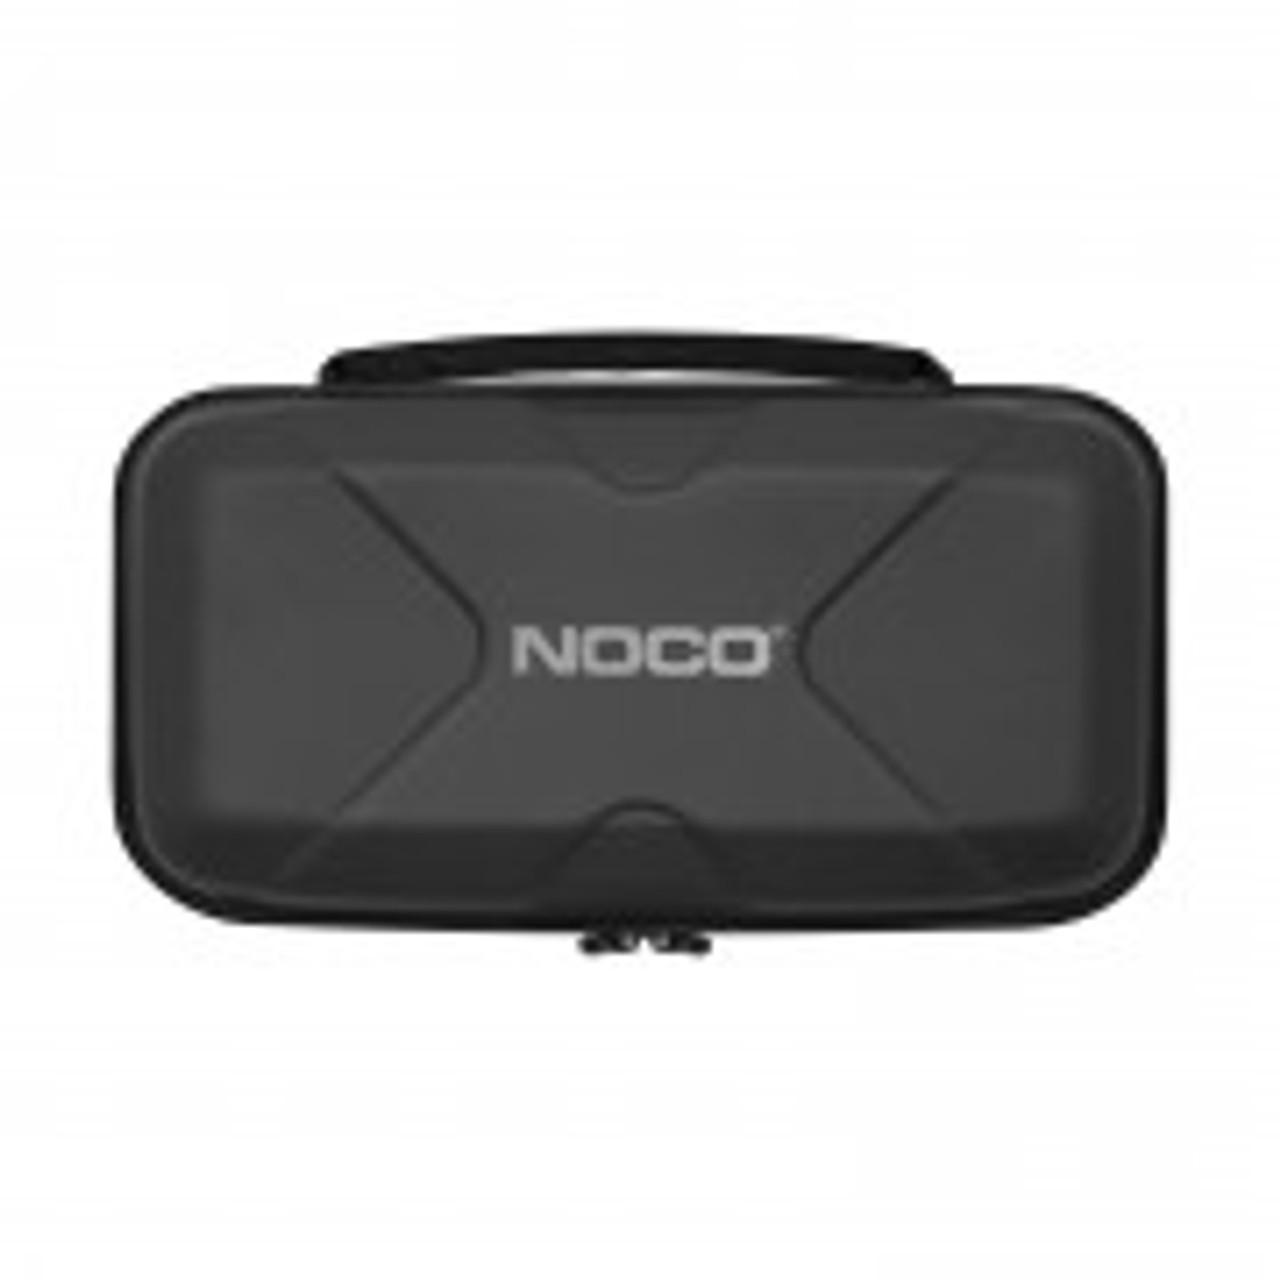 NOCO Precision Boost Battery Clamps